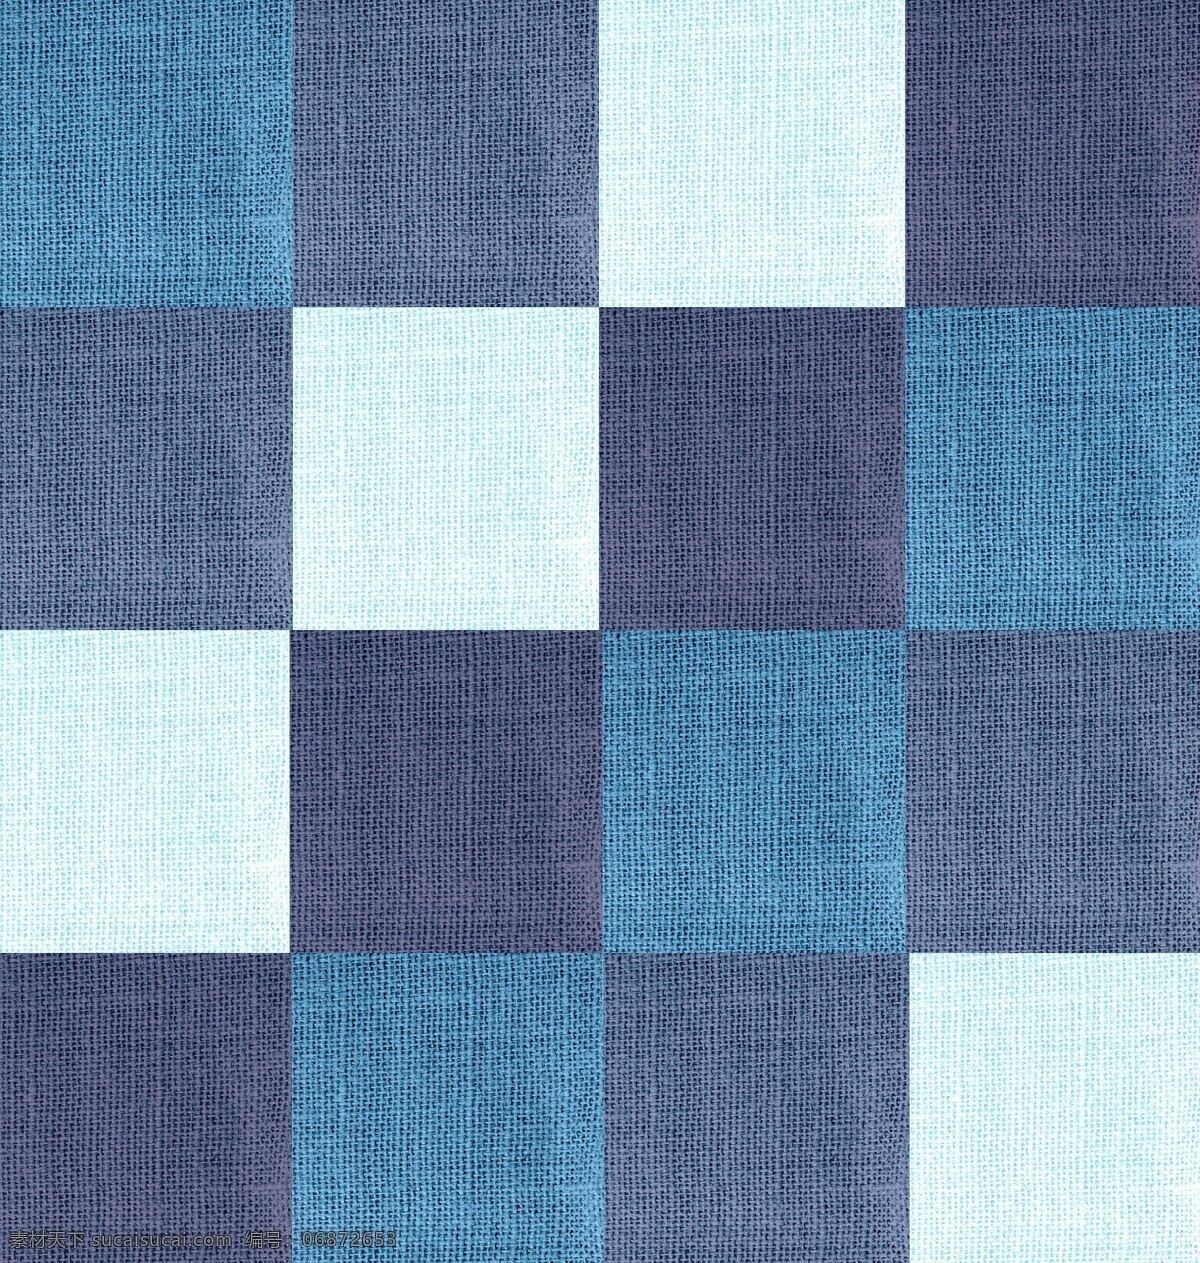 方块 布纹 底纹 地毯 花纹 地毯花纹 方块底纹 粗布底纹 蓝色格子布纹